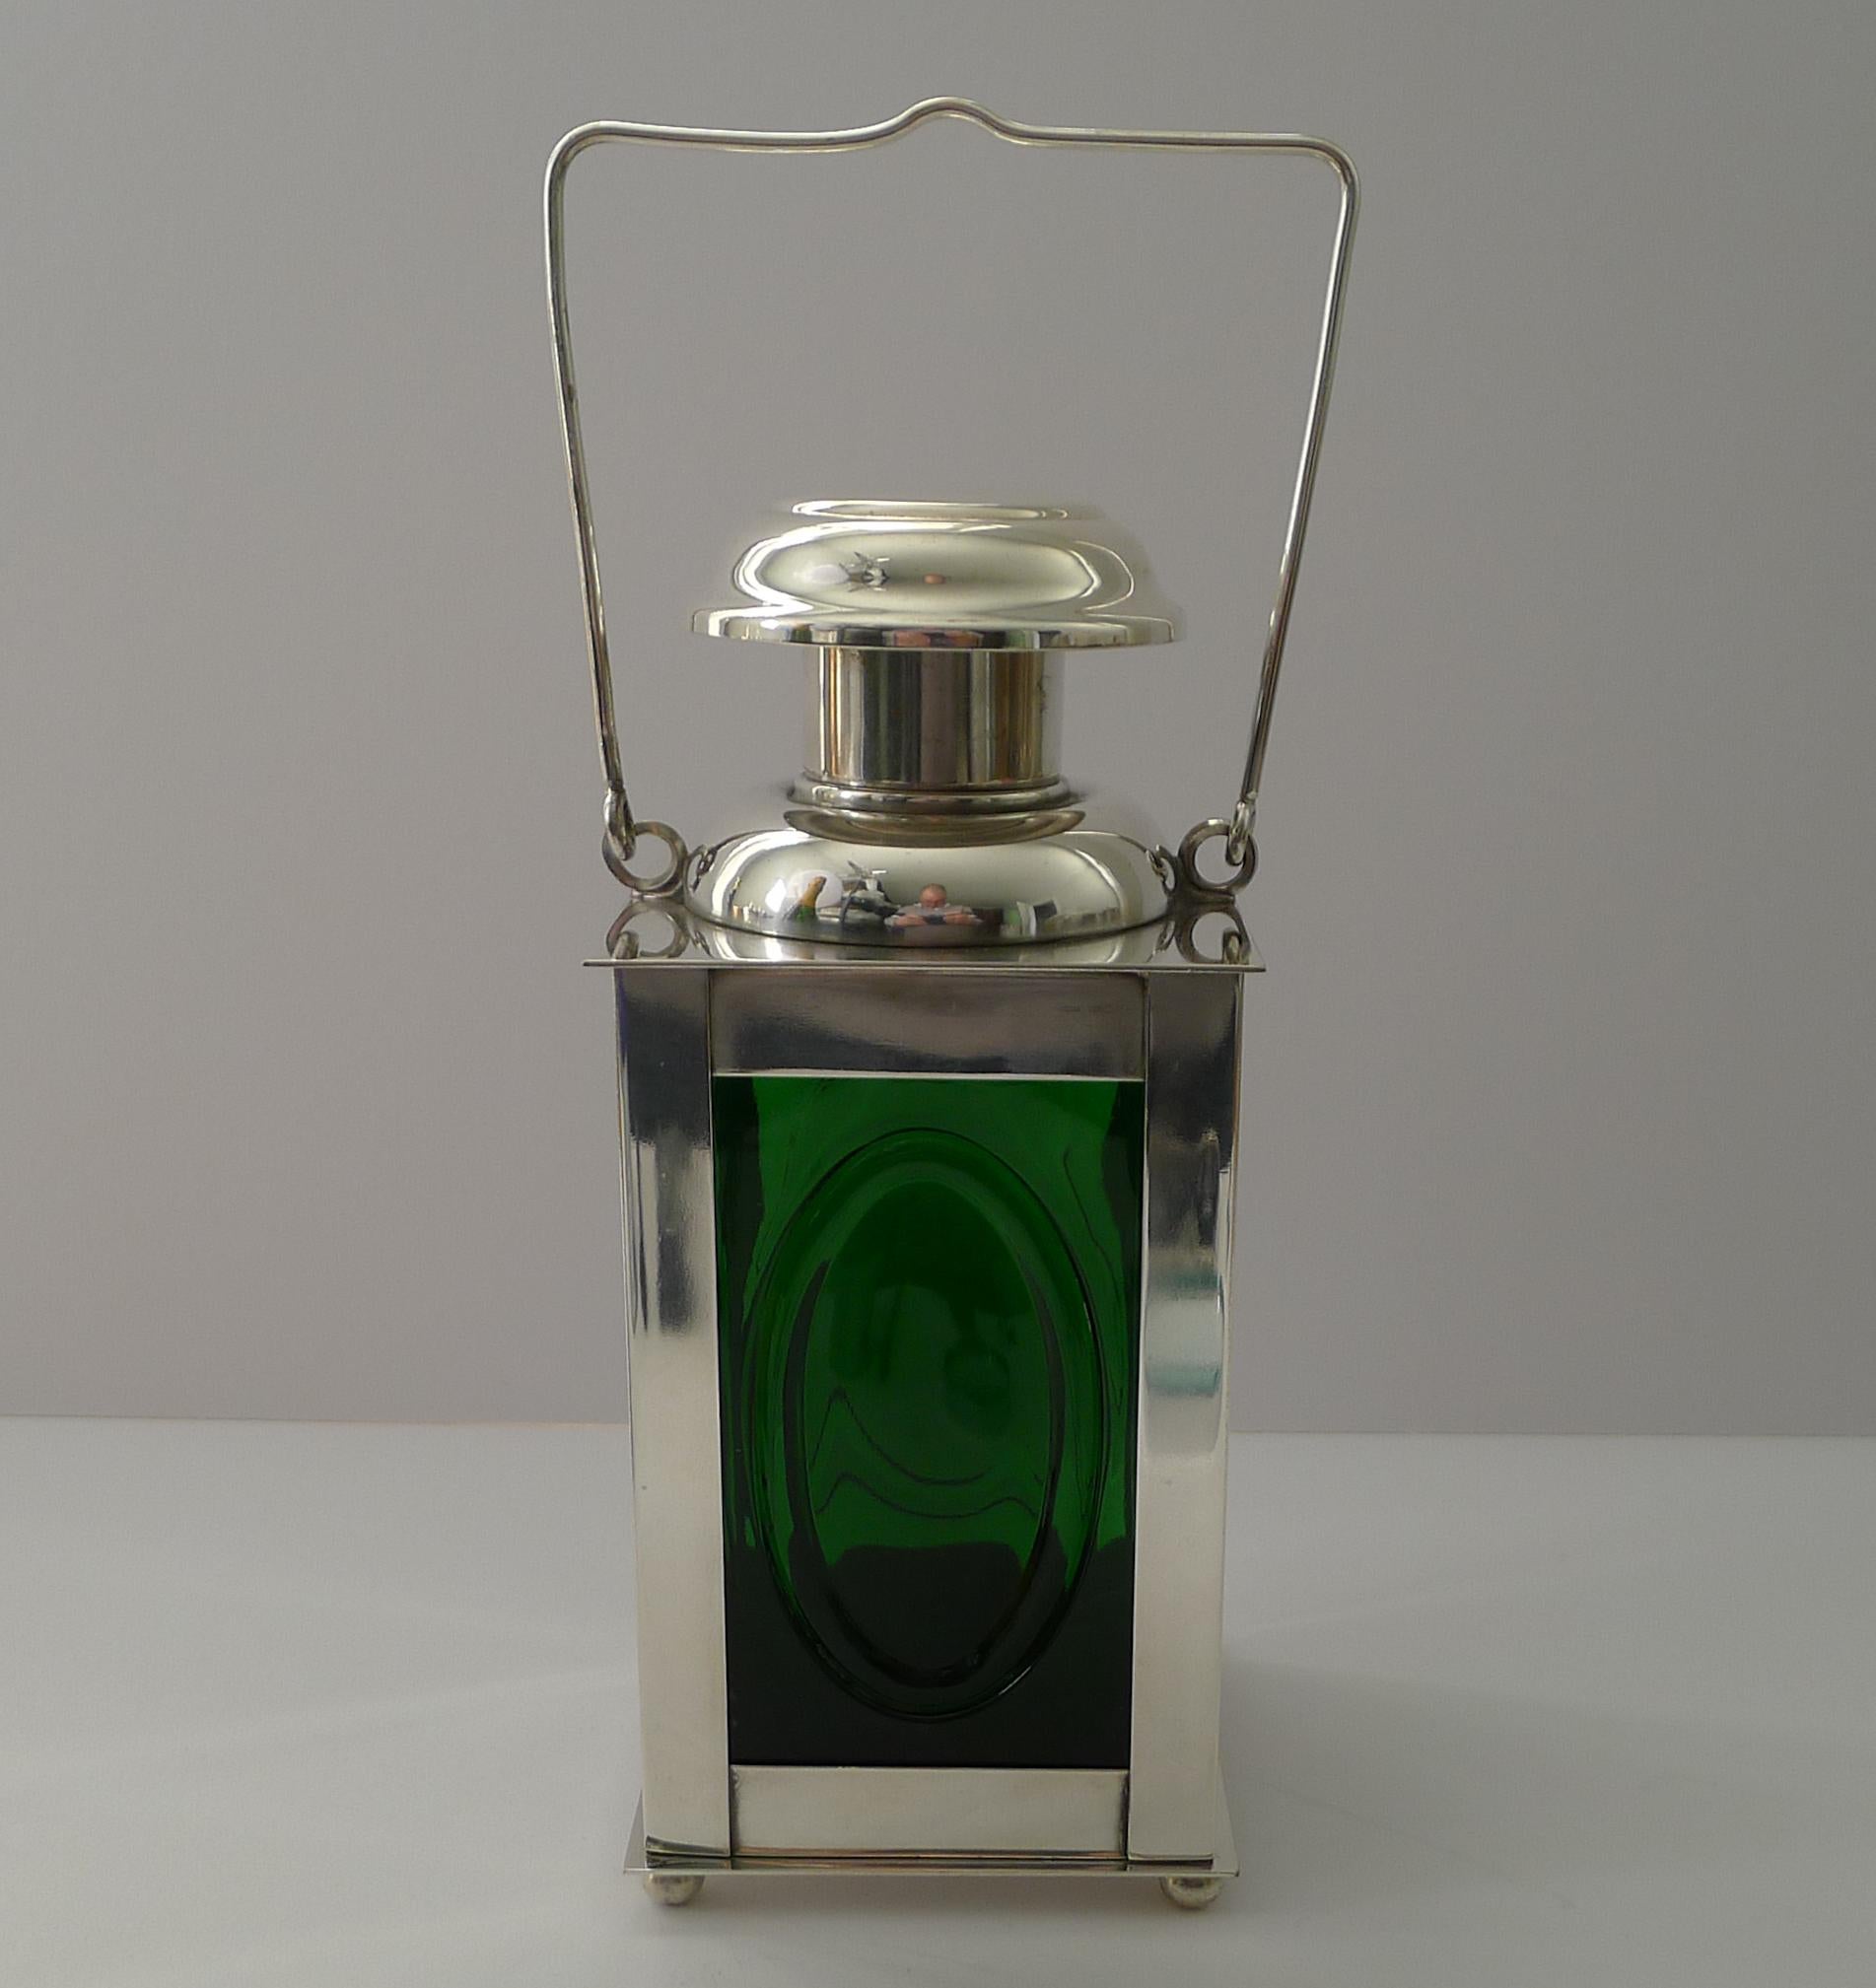 Eine wunderbare und Spaß Dekanter oder Cocktail-Shaker aus Silber Platte mit dem ursprünglichen grünen Flasche oder Dekanter innerhalb in Form eines Marine oder Eisenbahn Signal Laterne gemacht

Auf der Unterseite befindet sich die vollständige